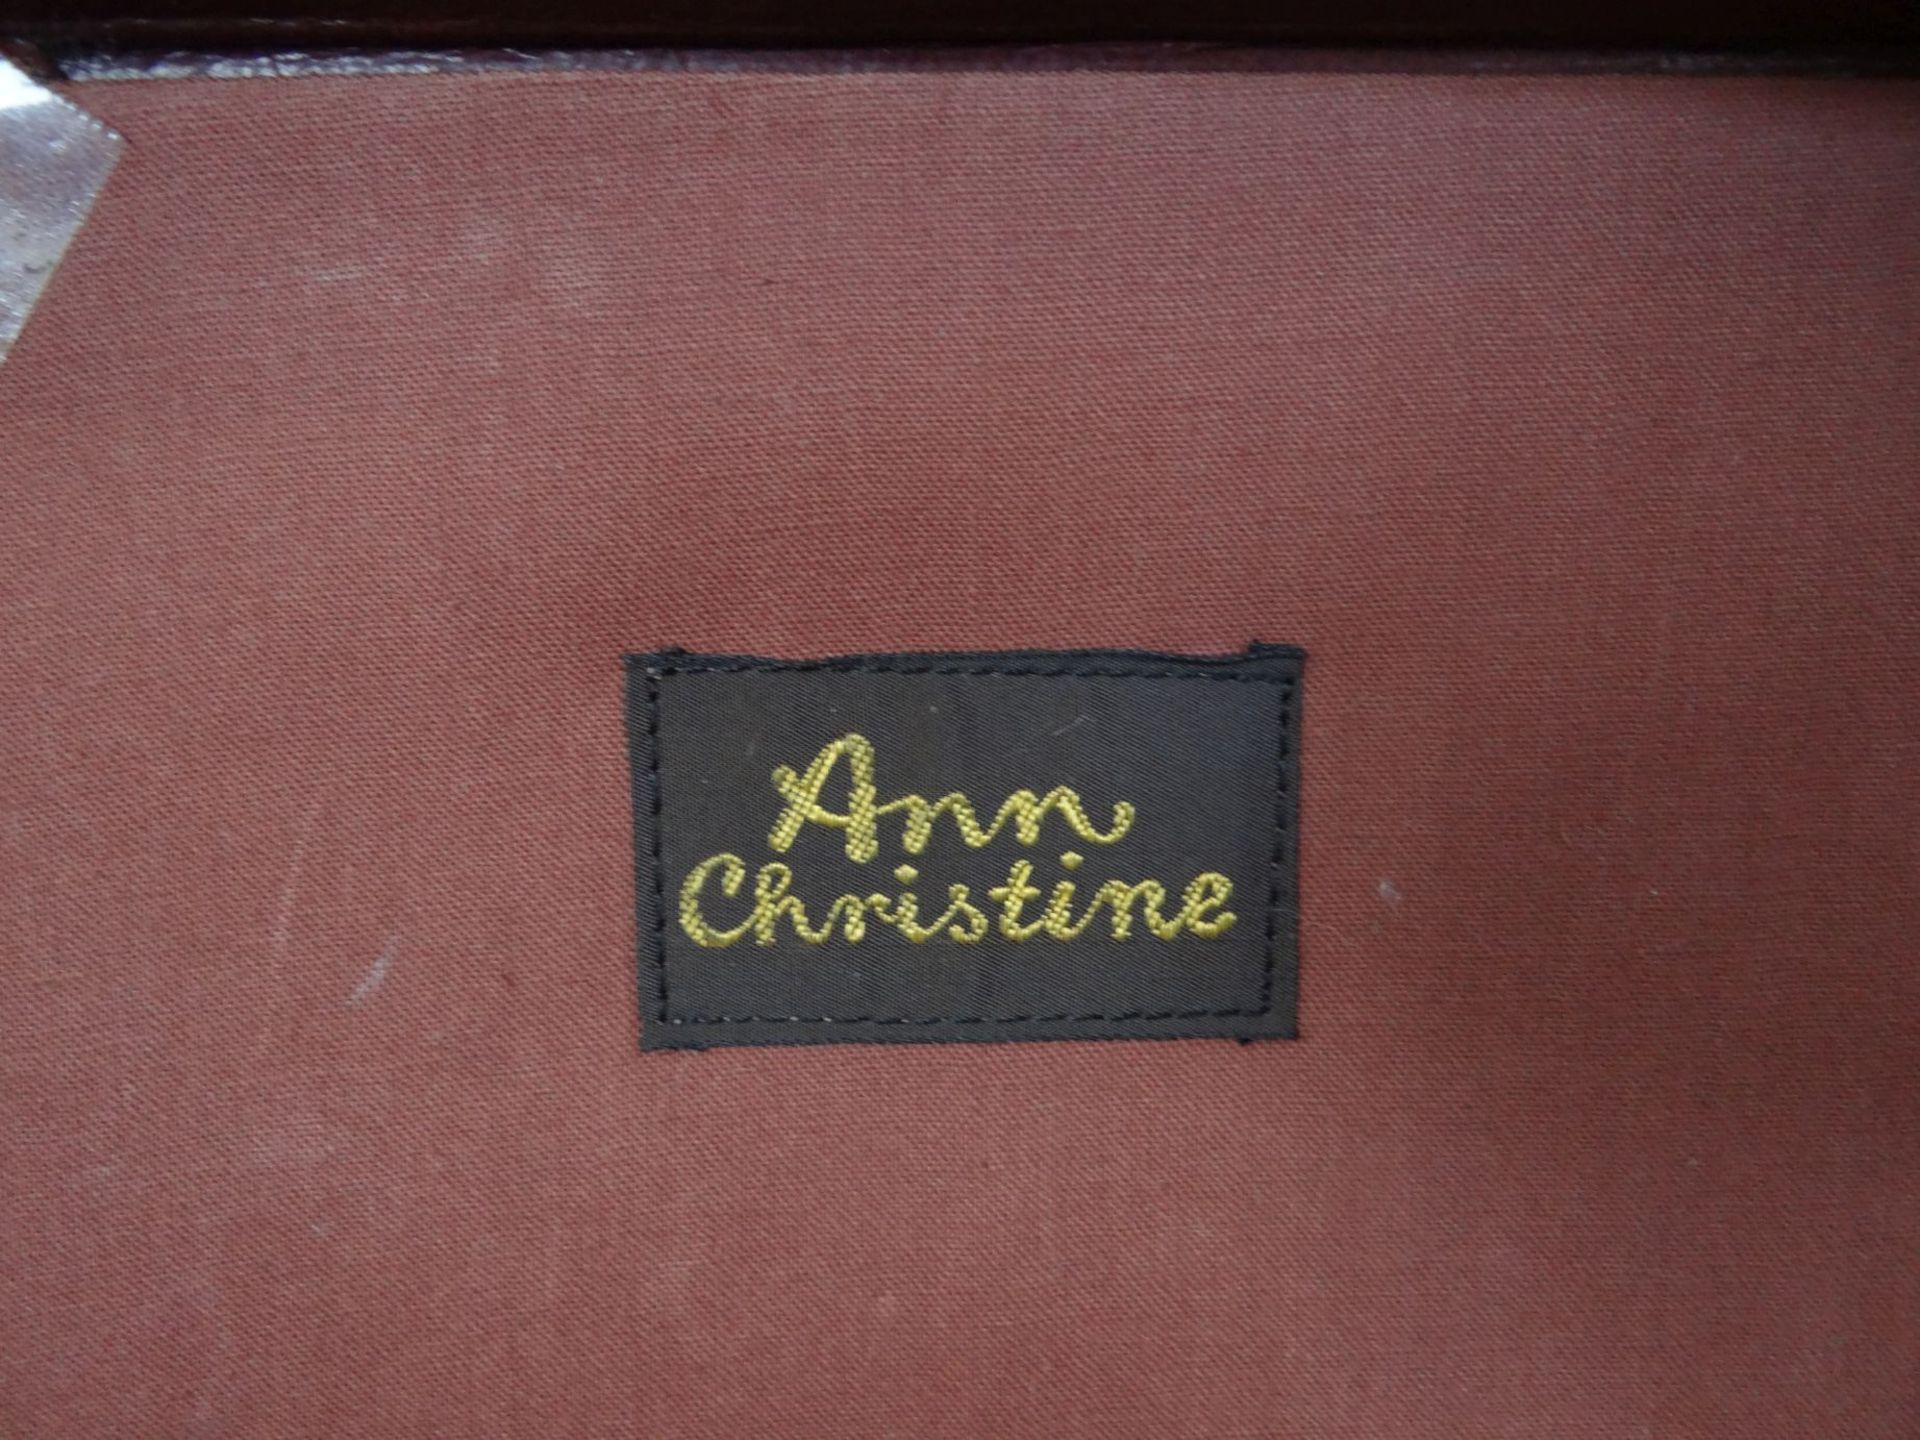 kl. Leder-Handkoffer "Ann Christin", mttiig Stoff, 36x24 cm, Alters-u. Gebrauchsspuren - Bild 4 aus 5